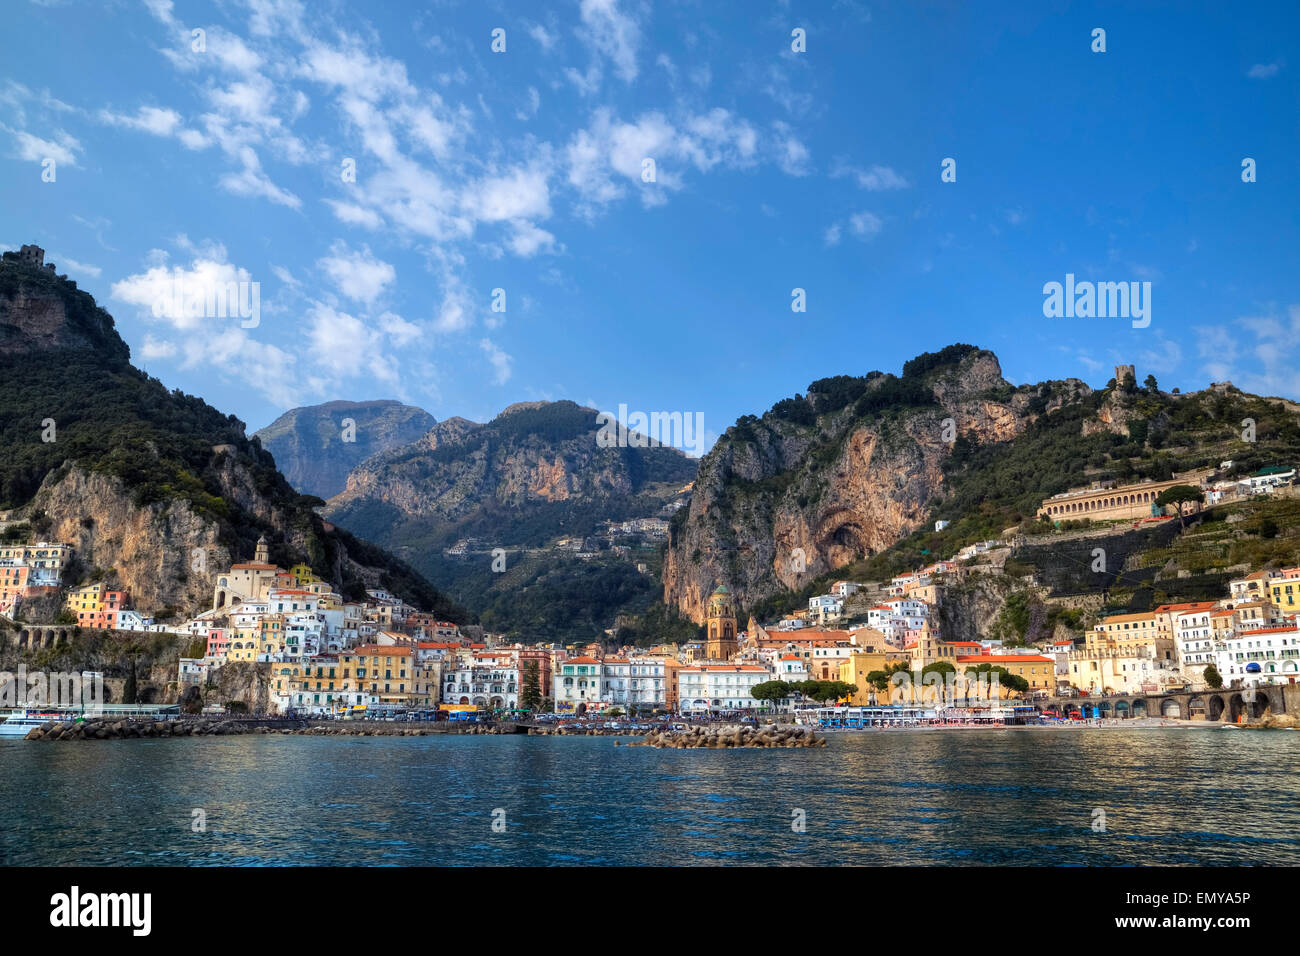 Amalfi, Amalfi Coast, Campania, Italy Stock Photo